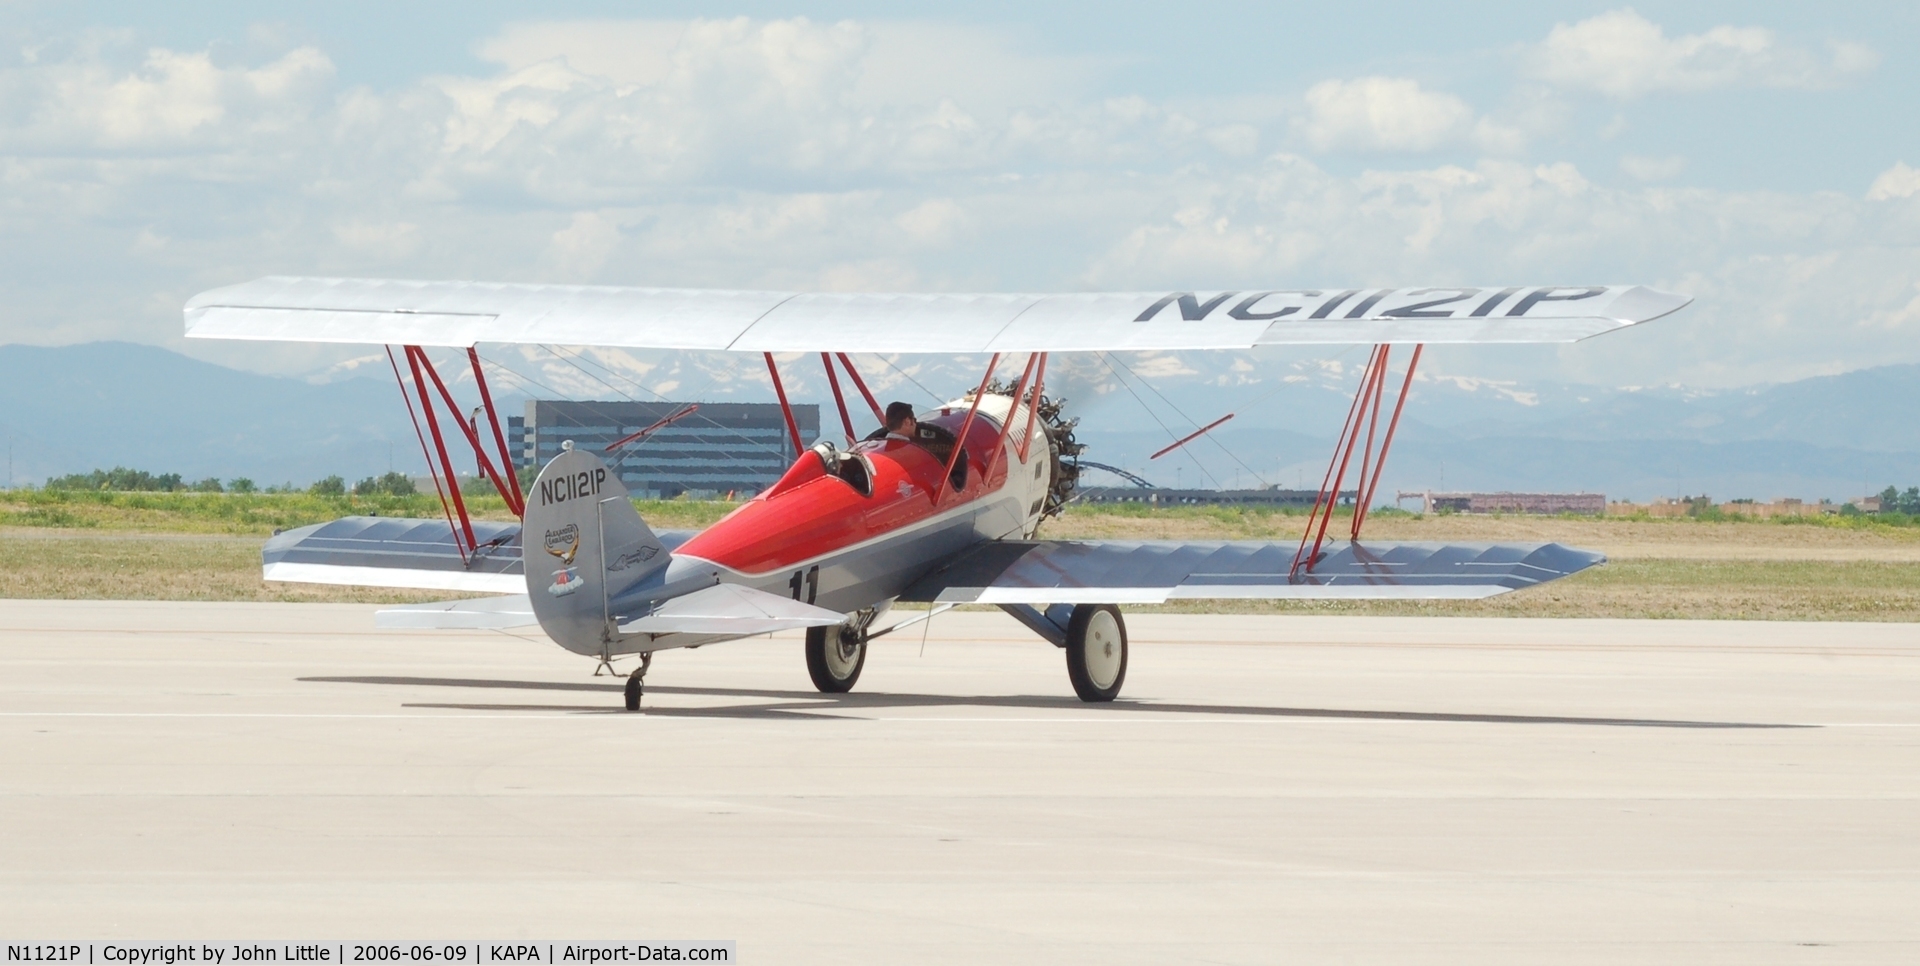 N1121P, 1929 Alexander Eaglerock A-2 C/N 663, Warbird Departing Centennial